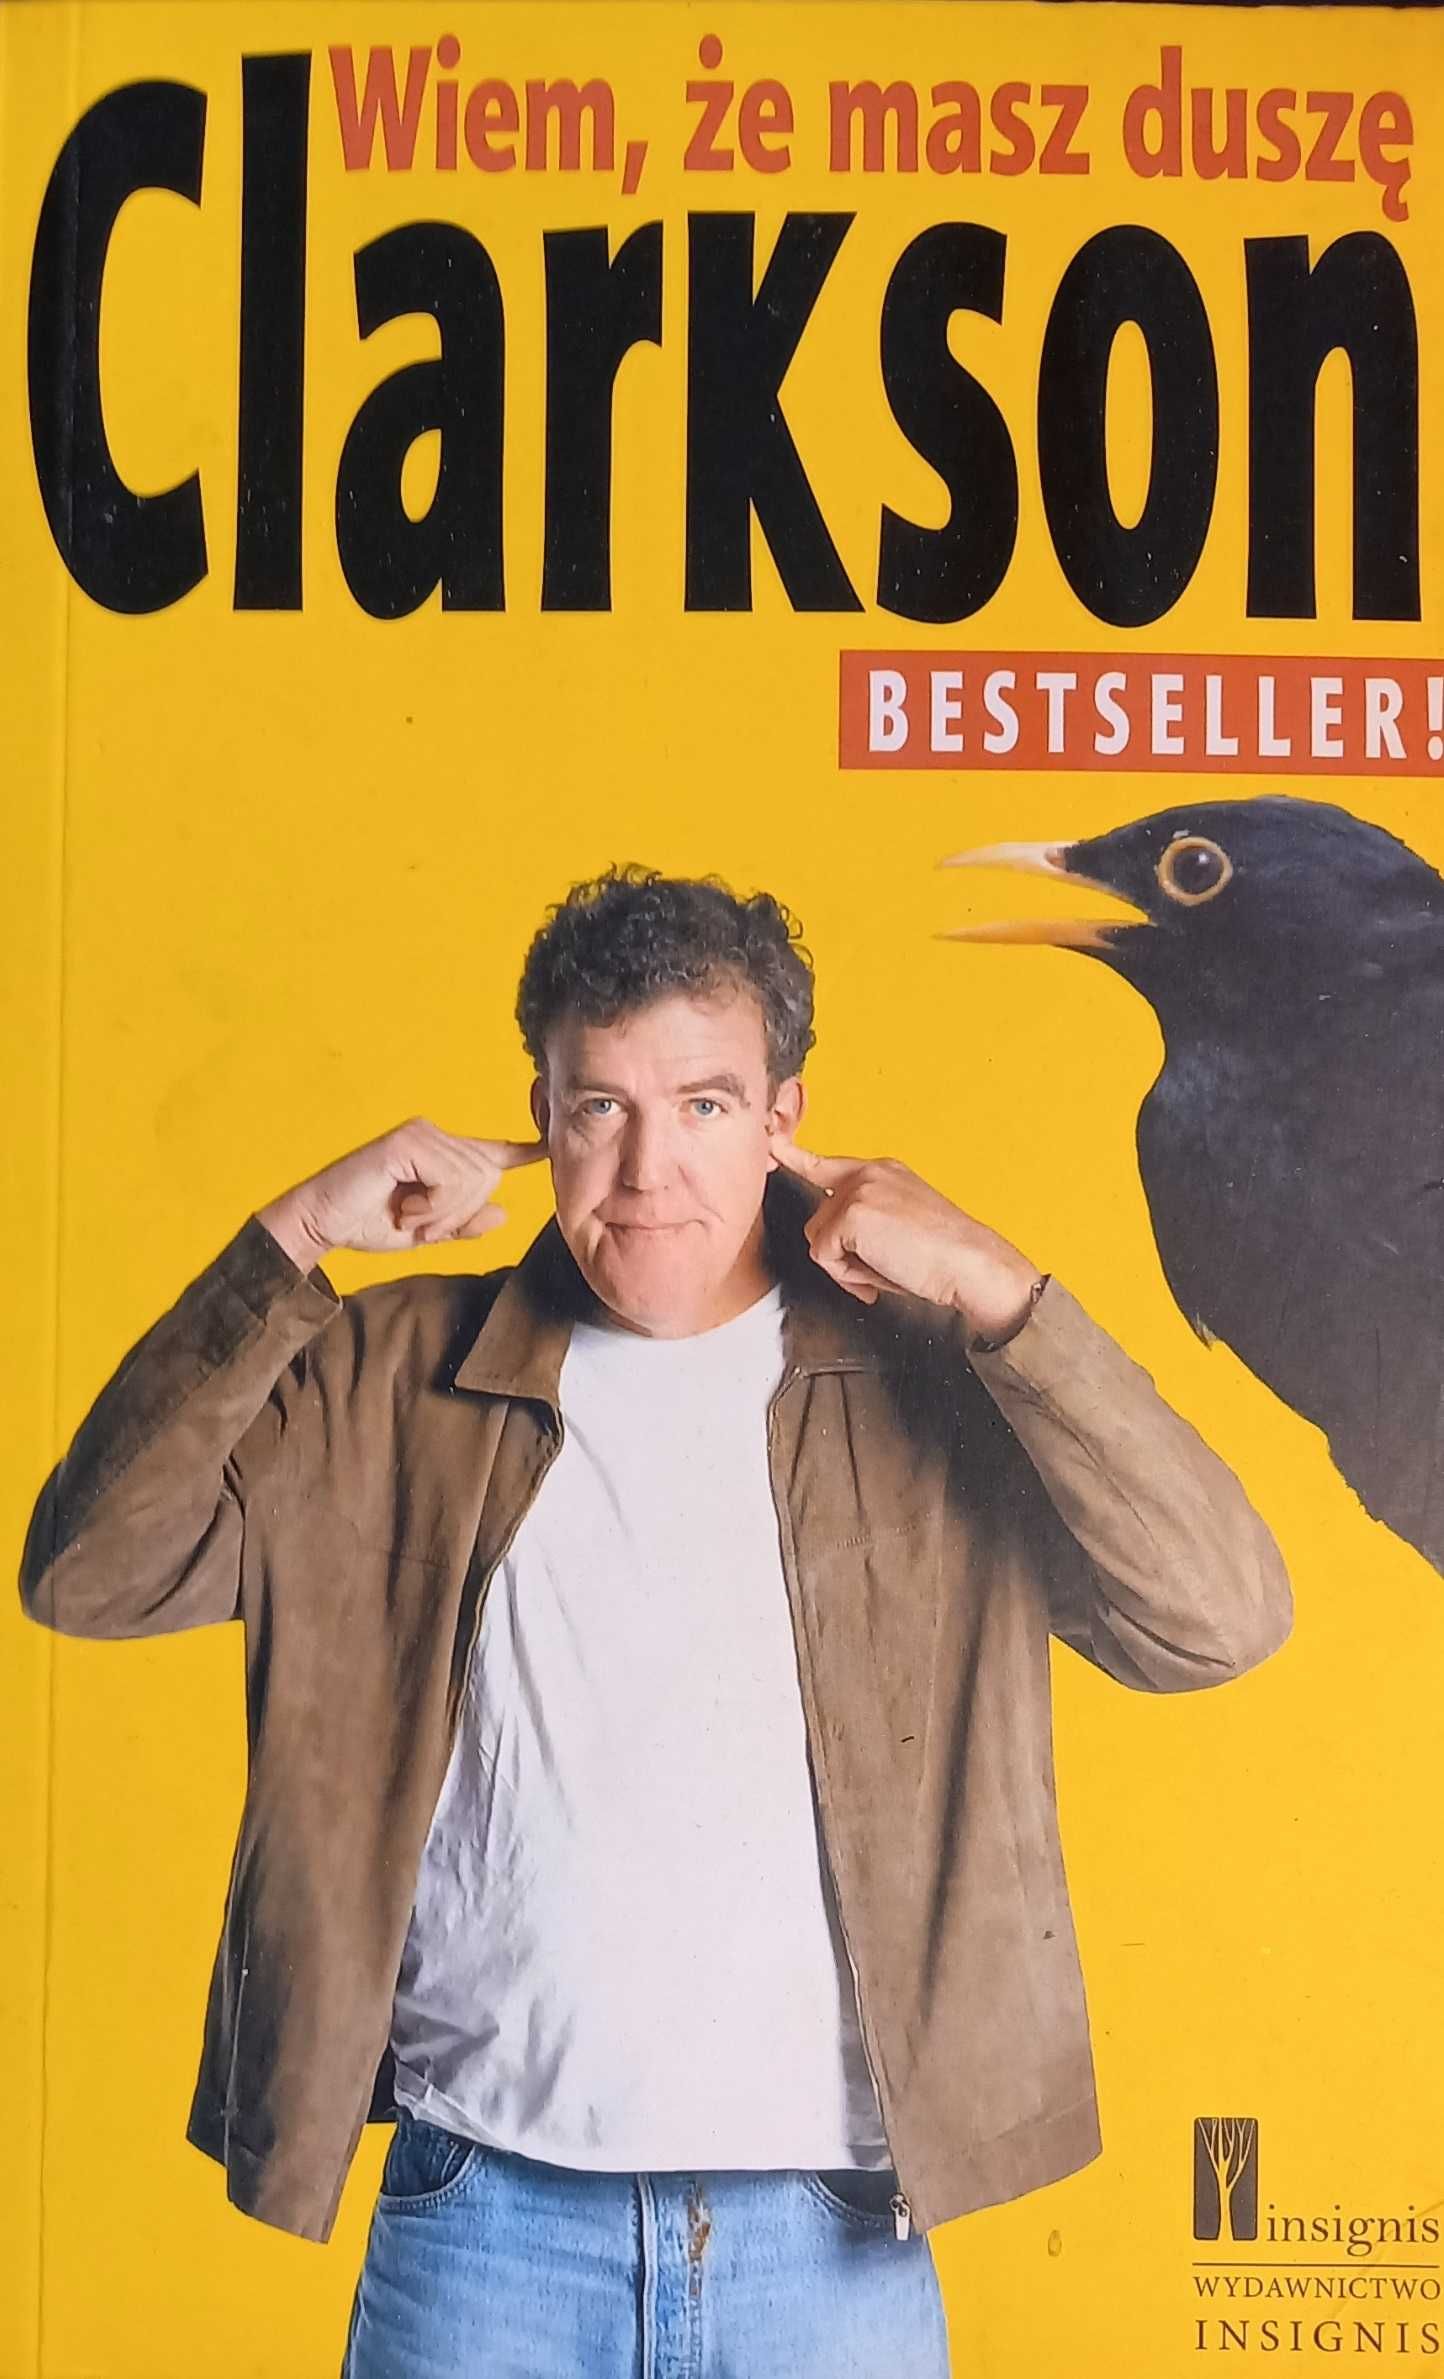 Clarkson: "Wiem, że masz duszę"